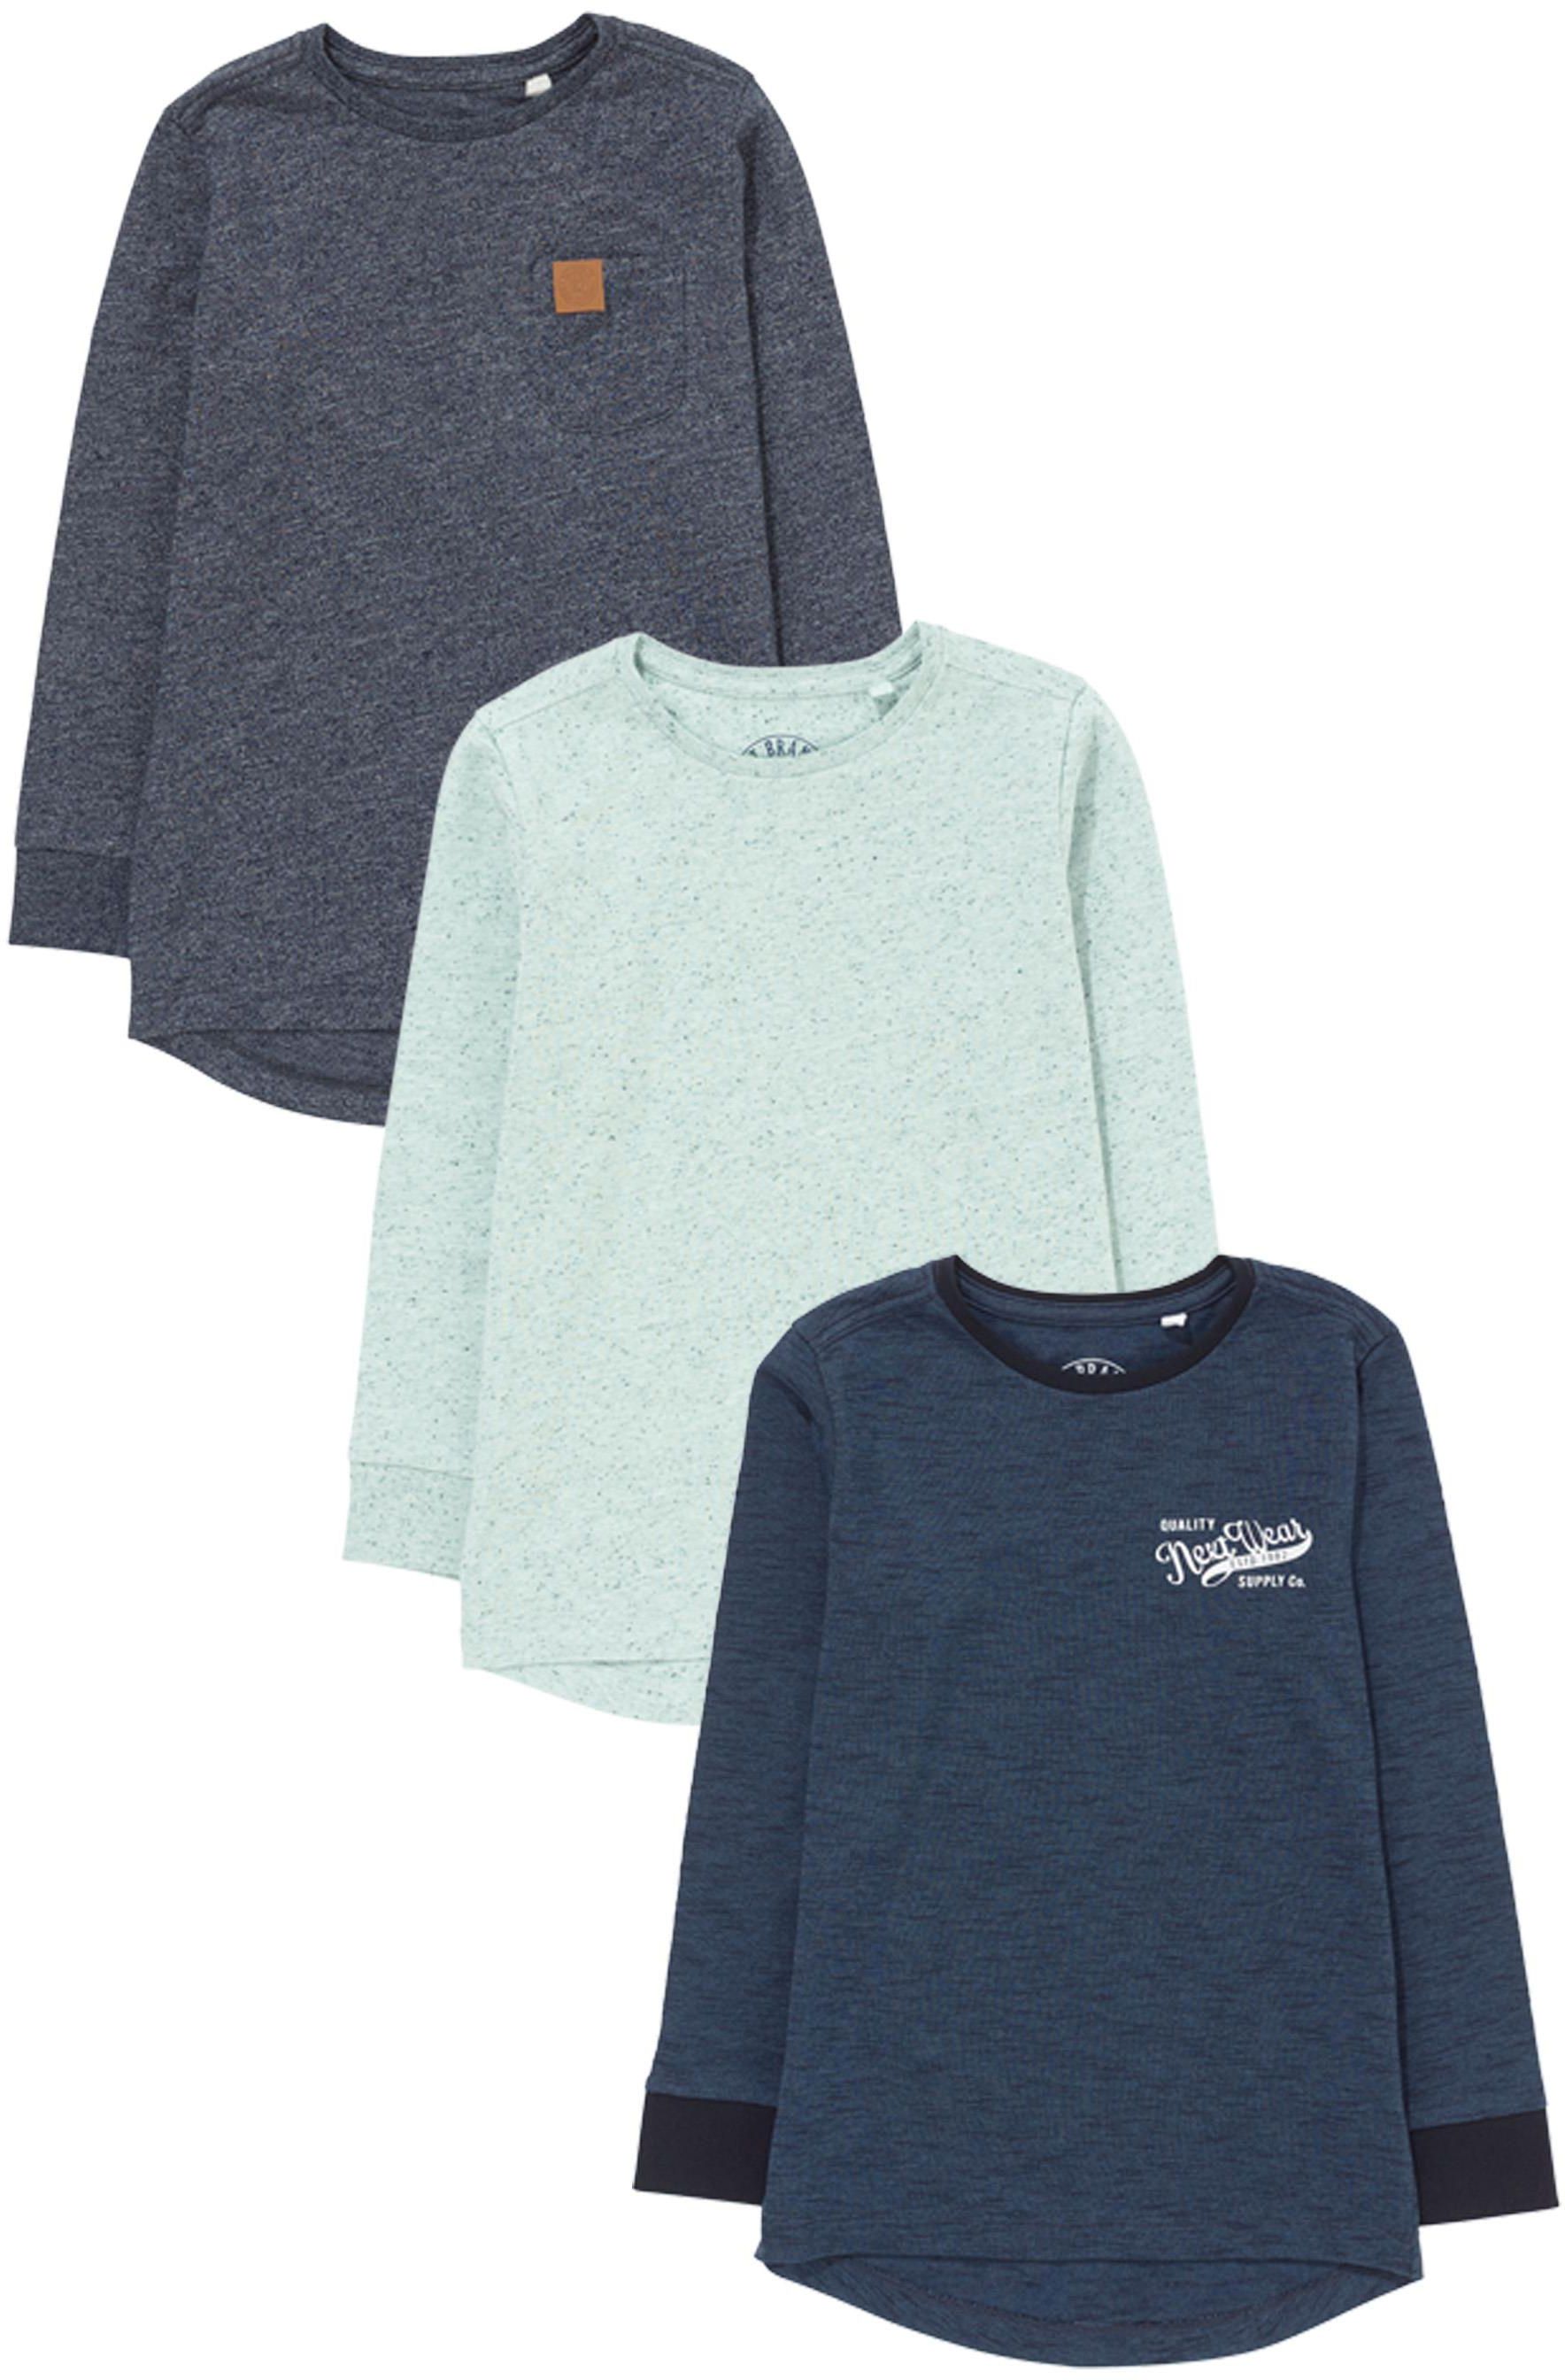 Blue Long Sleeve T-Shirts Three Pack (3-16yrs)